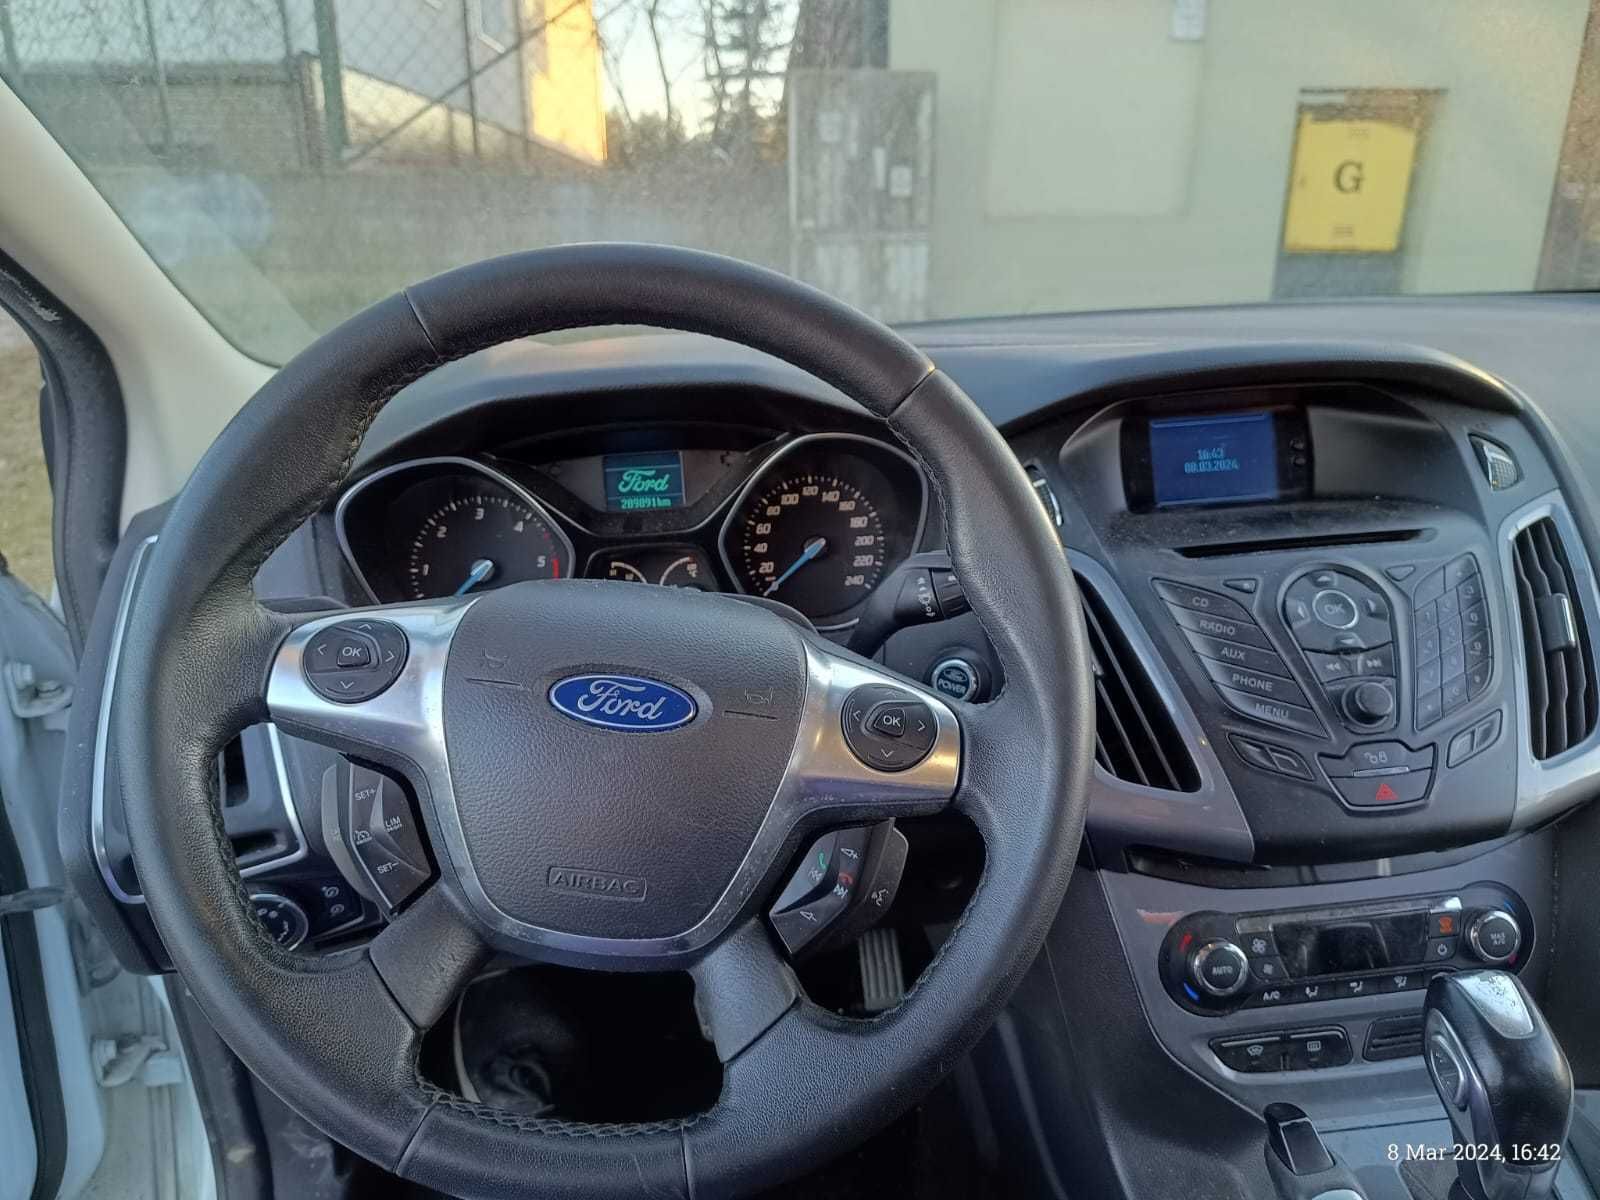 Ford Focus 2.0D - uszkodzona skrzynia